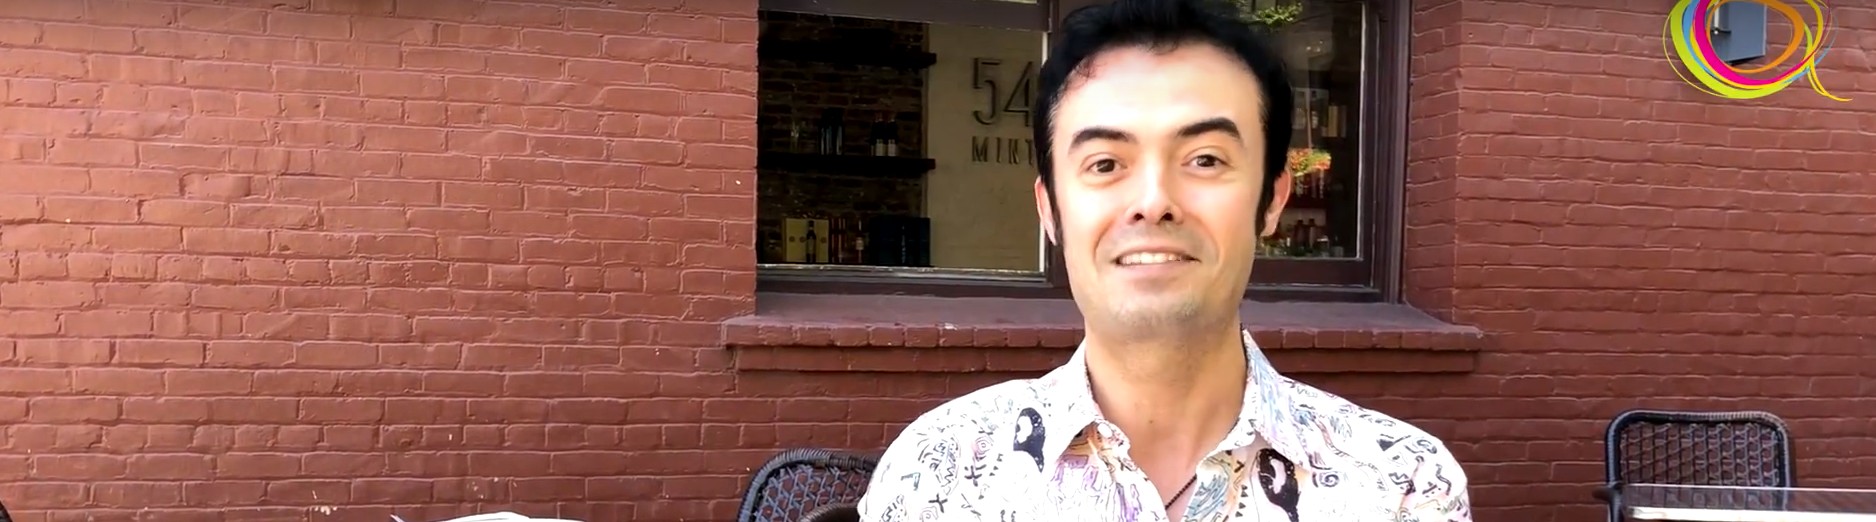 MEMÓRIA | AcontecendoAqui entrevista Orkut Büyükkökten, criador do Orkut.com e da nova rede social Hello